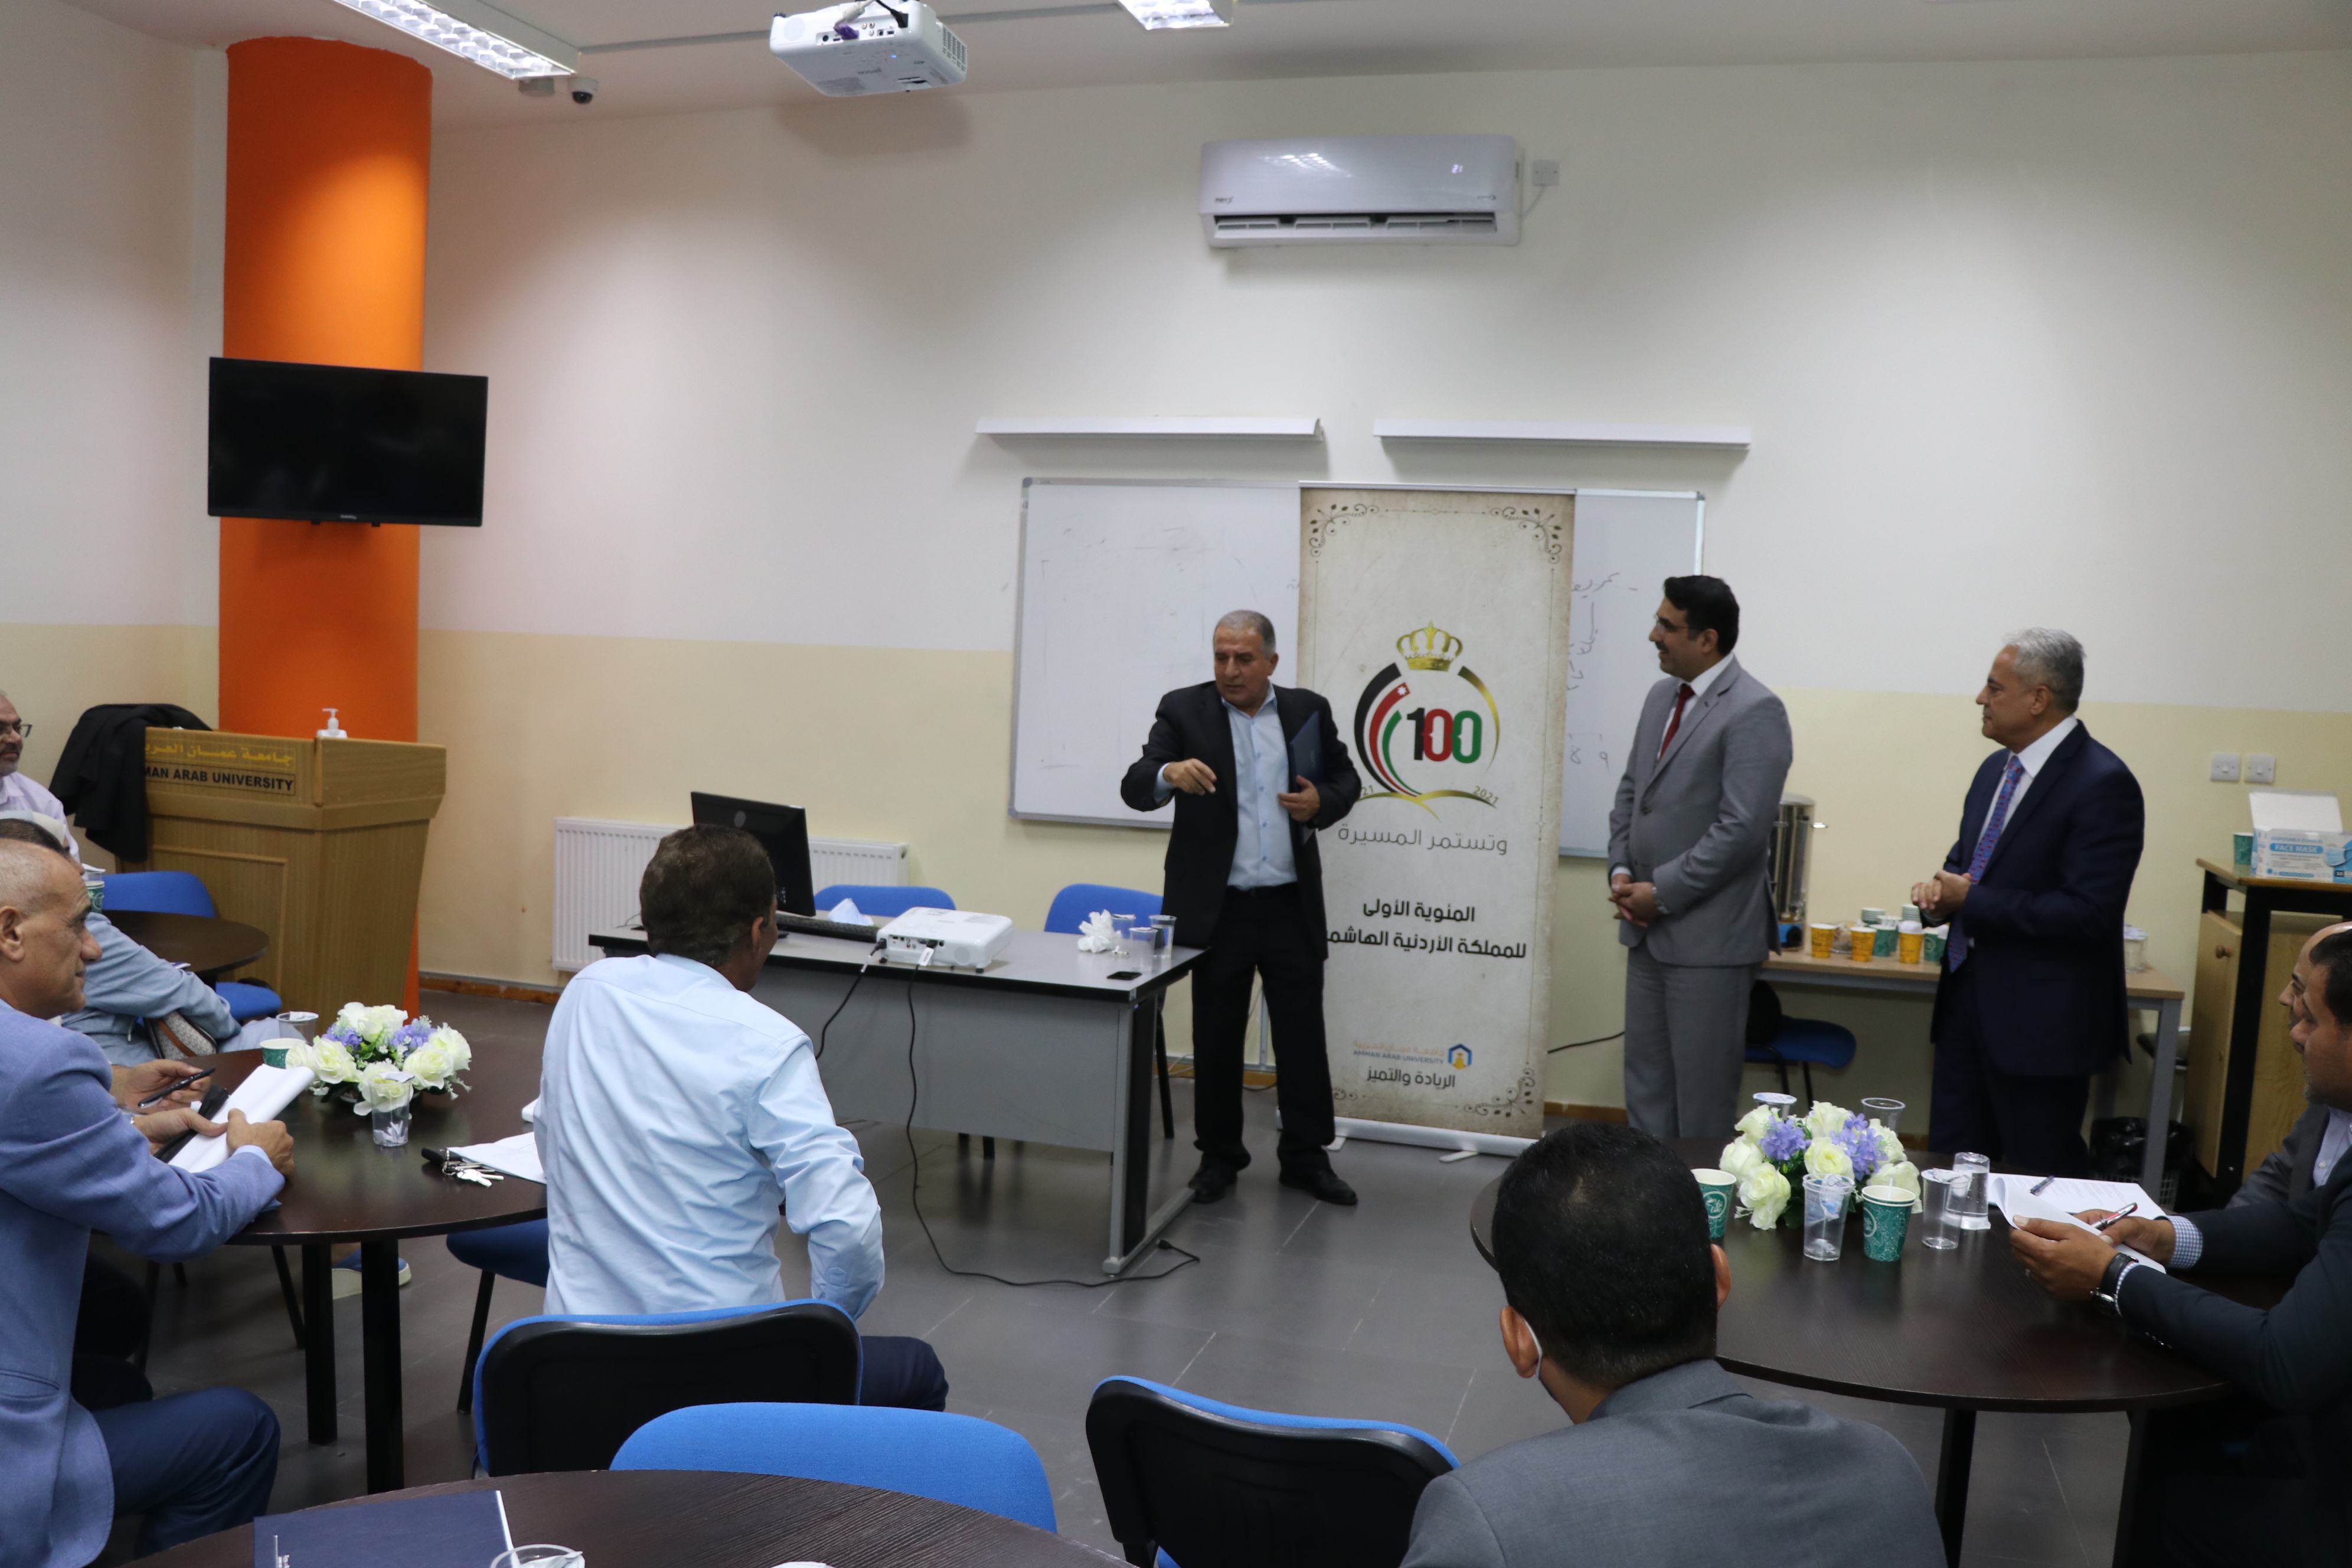 برامج تدريبية نوعية لأعضاء الهيئة التدريسية في "عمان العربية"1